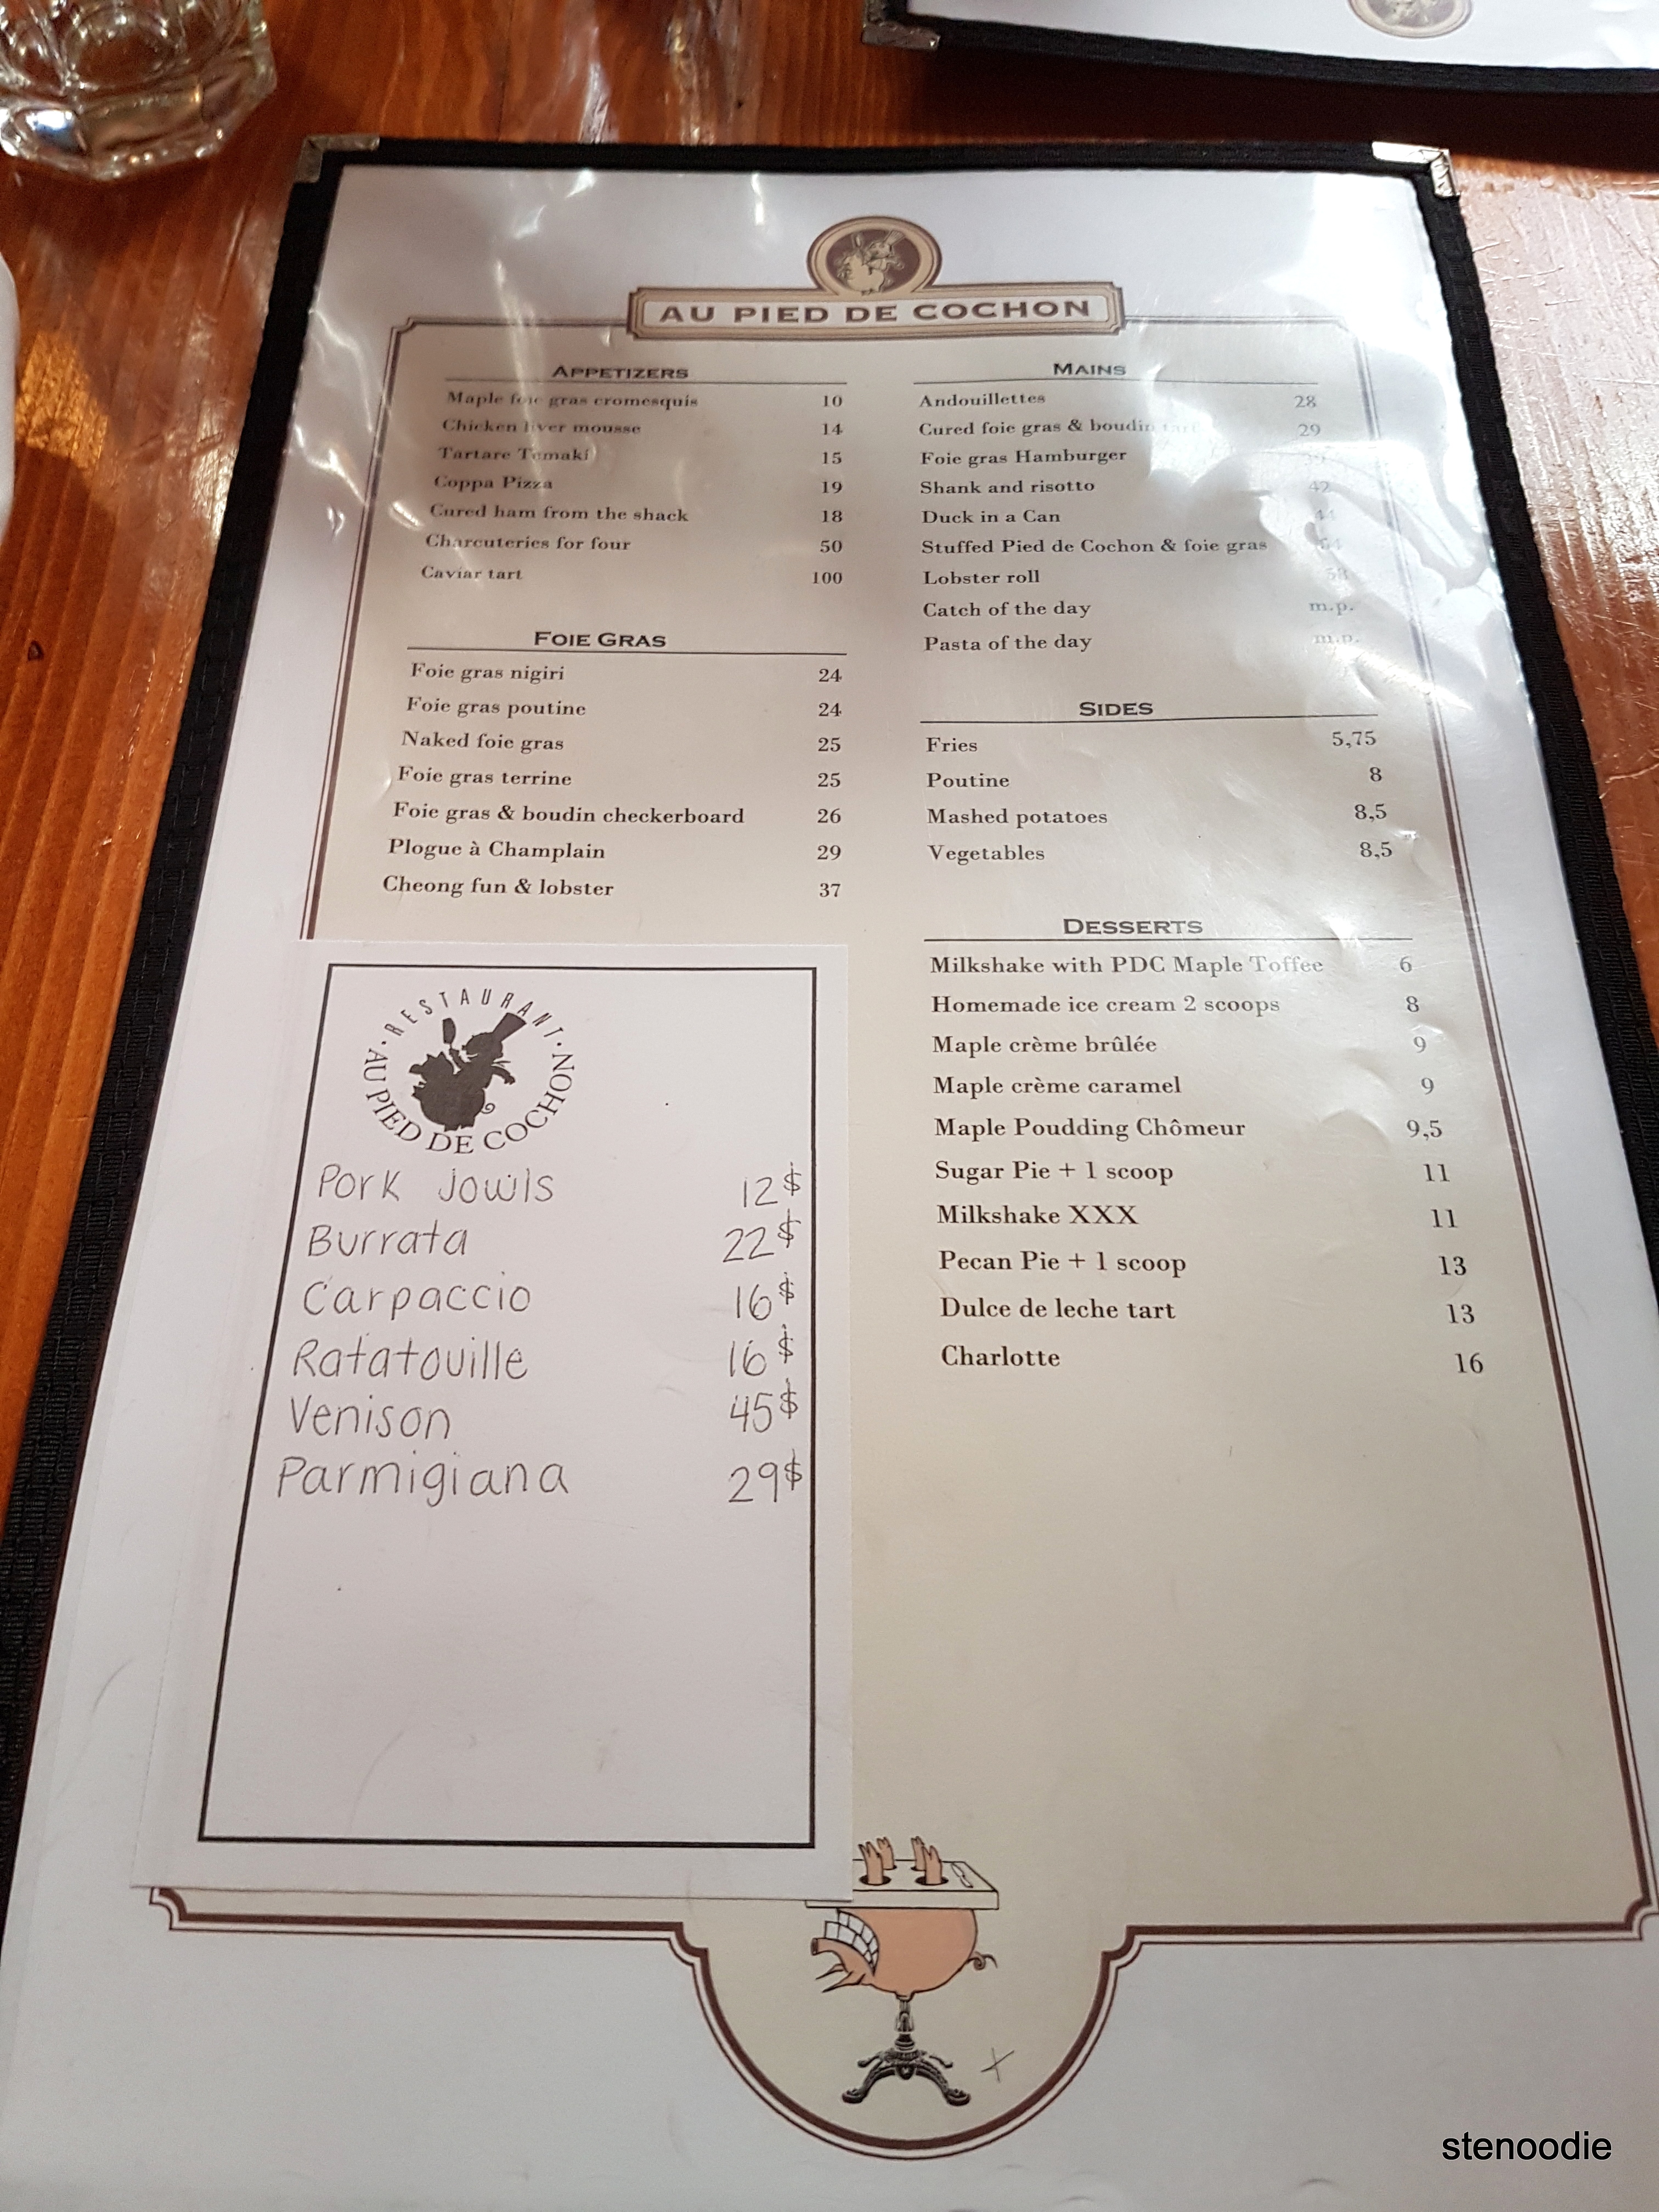 Au Pied de Cochon menu and prices